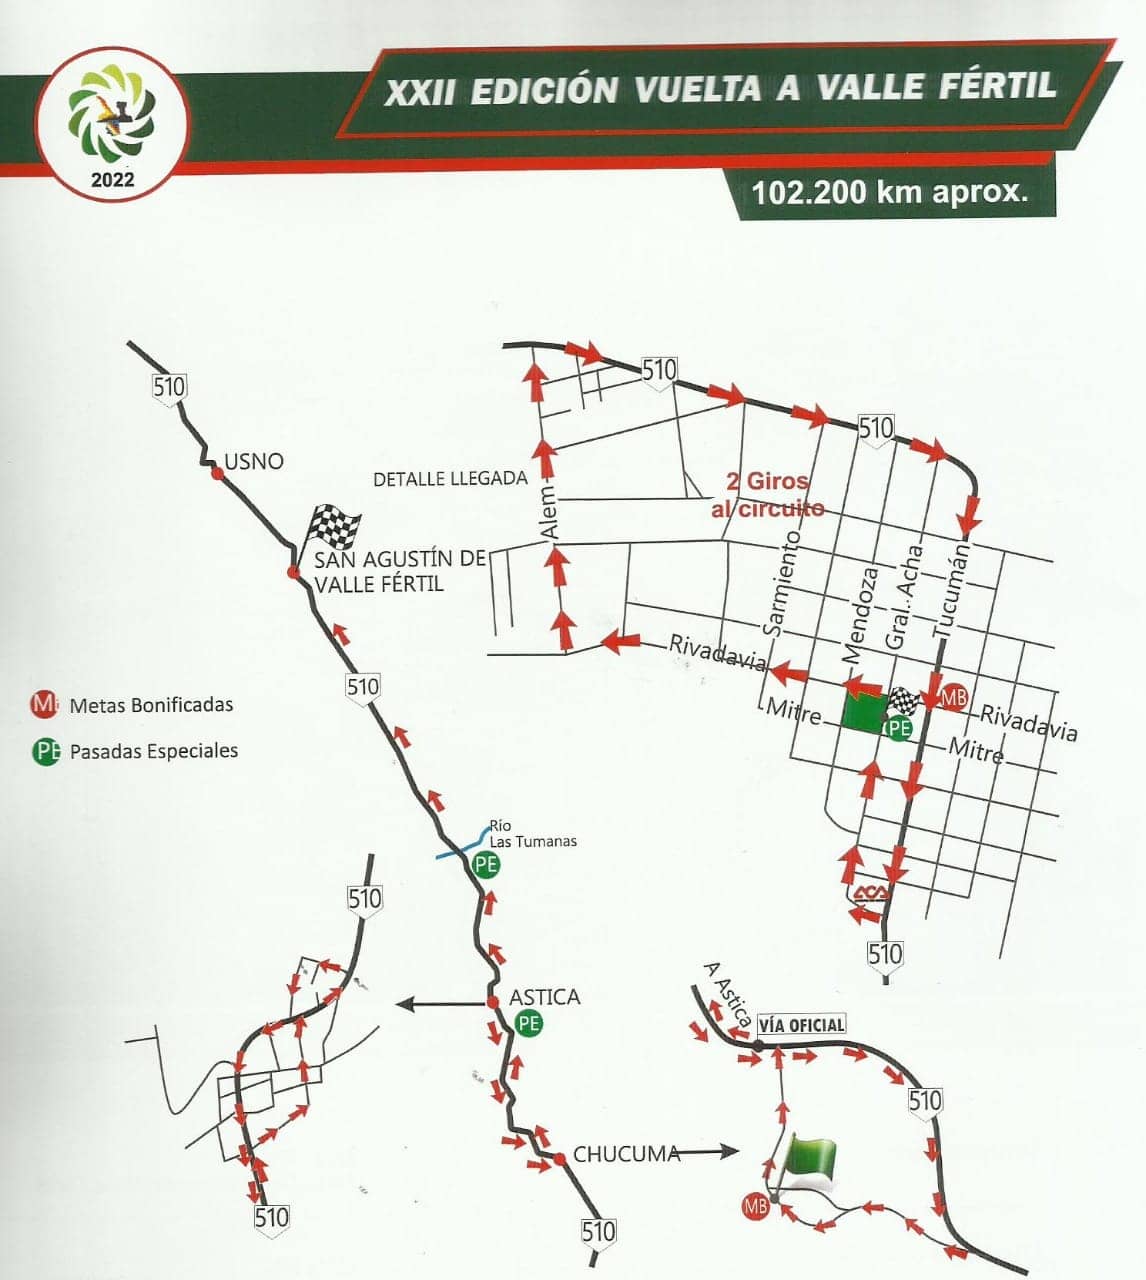 Municipalidad de Valle Fértil